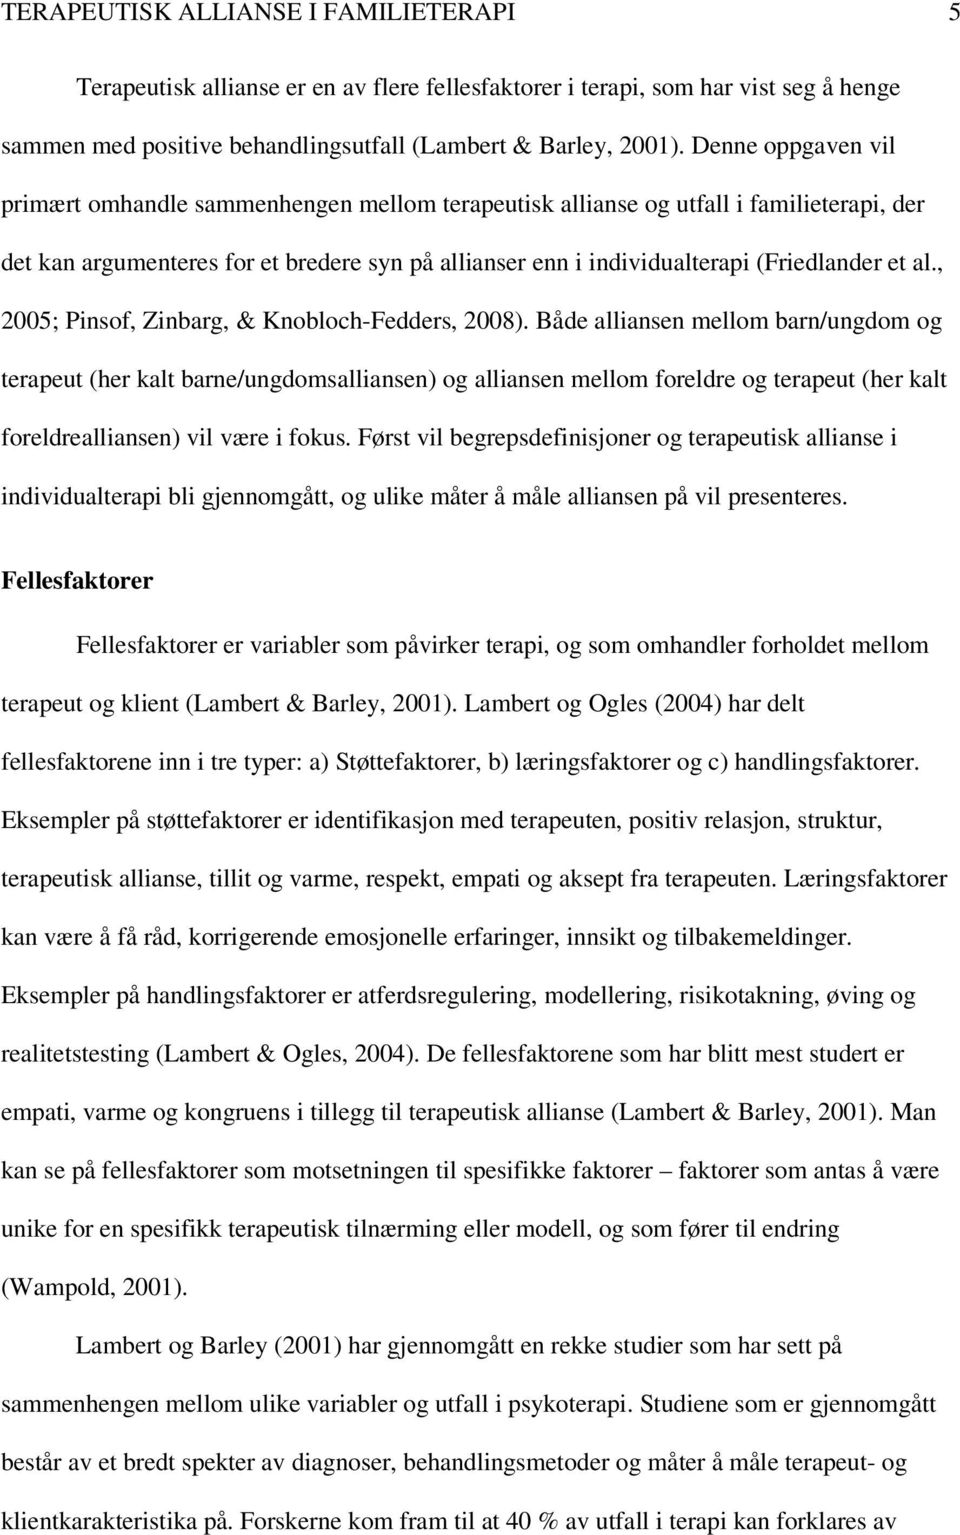 al., 2005; Pinsof, Zinbarg, & Knobloch-Fedders, 2008).